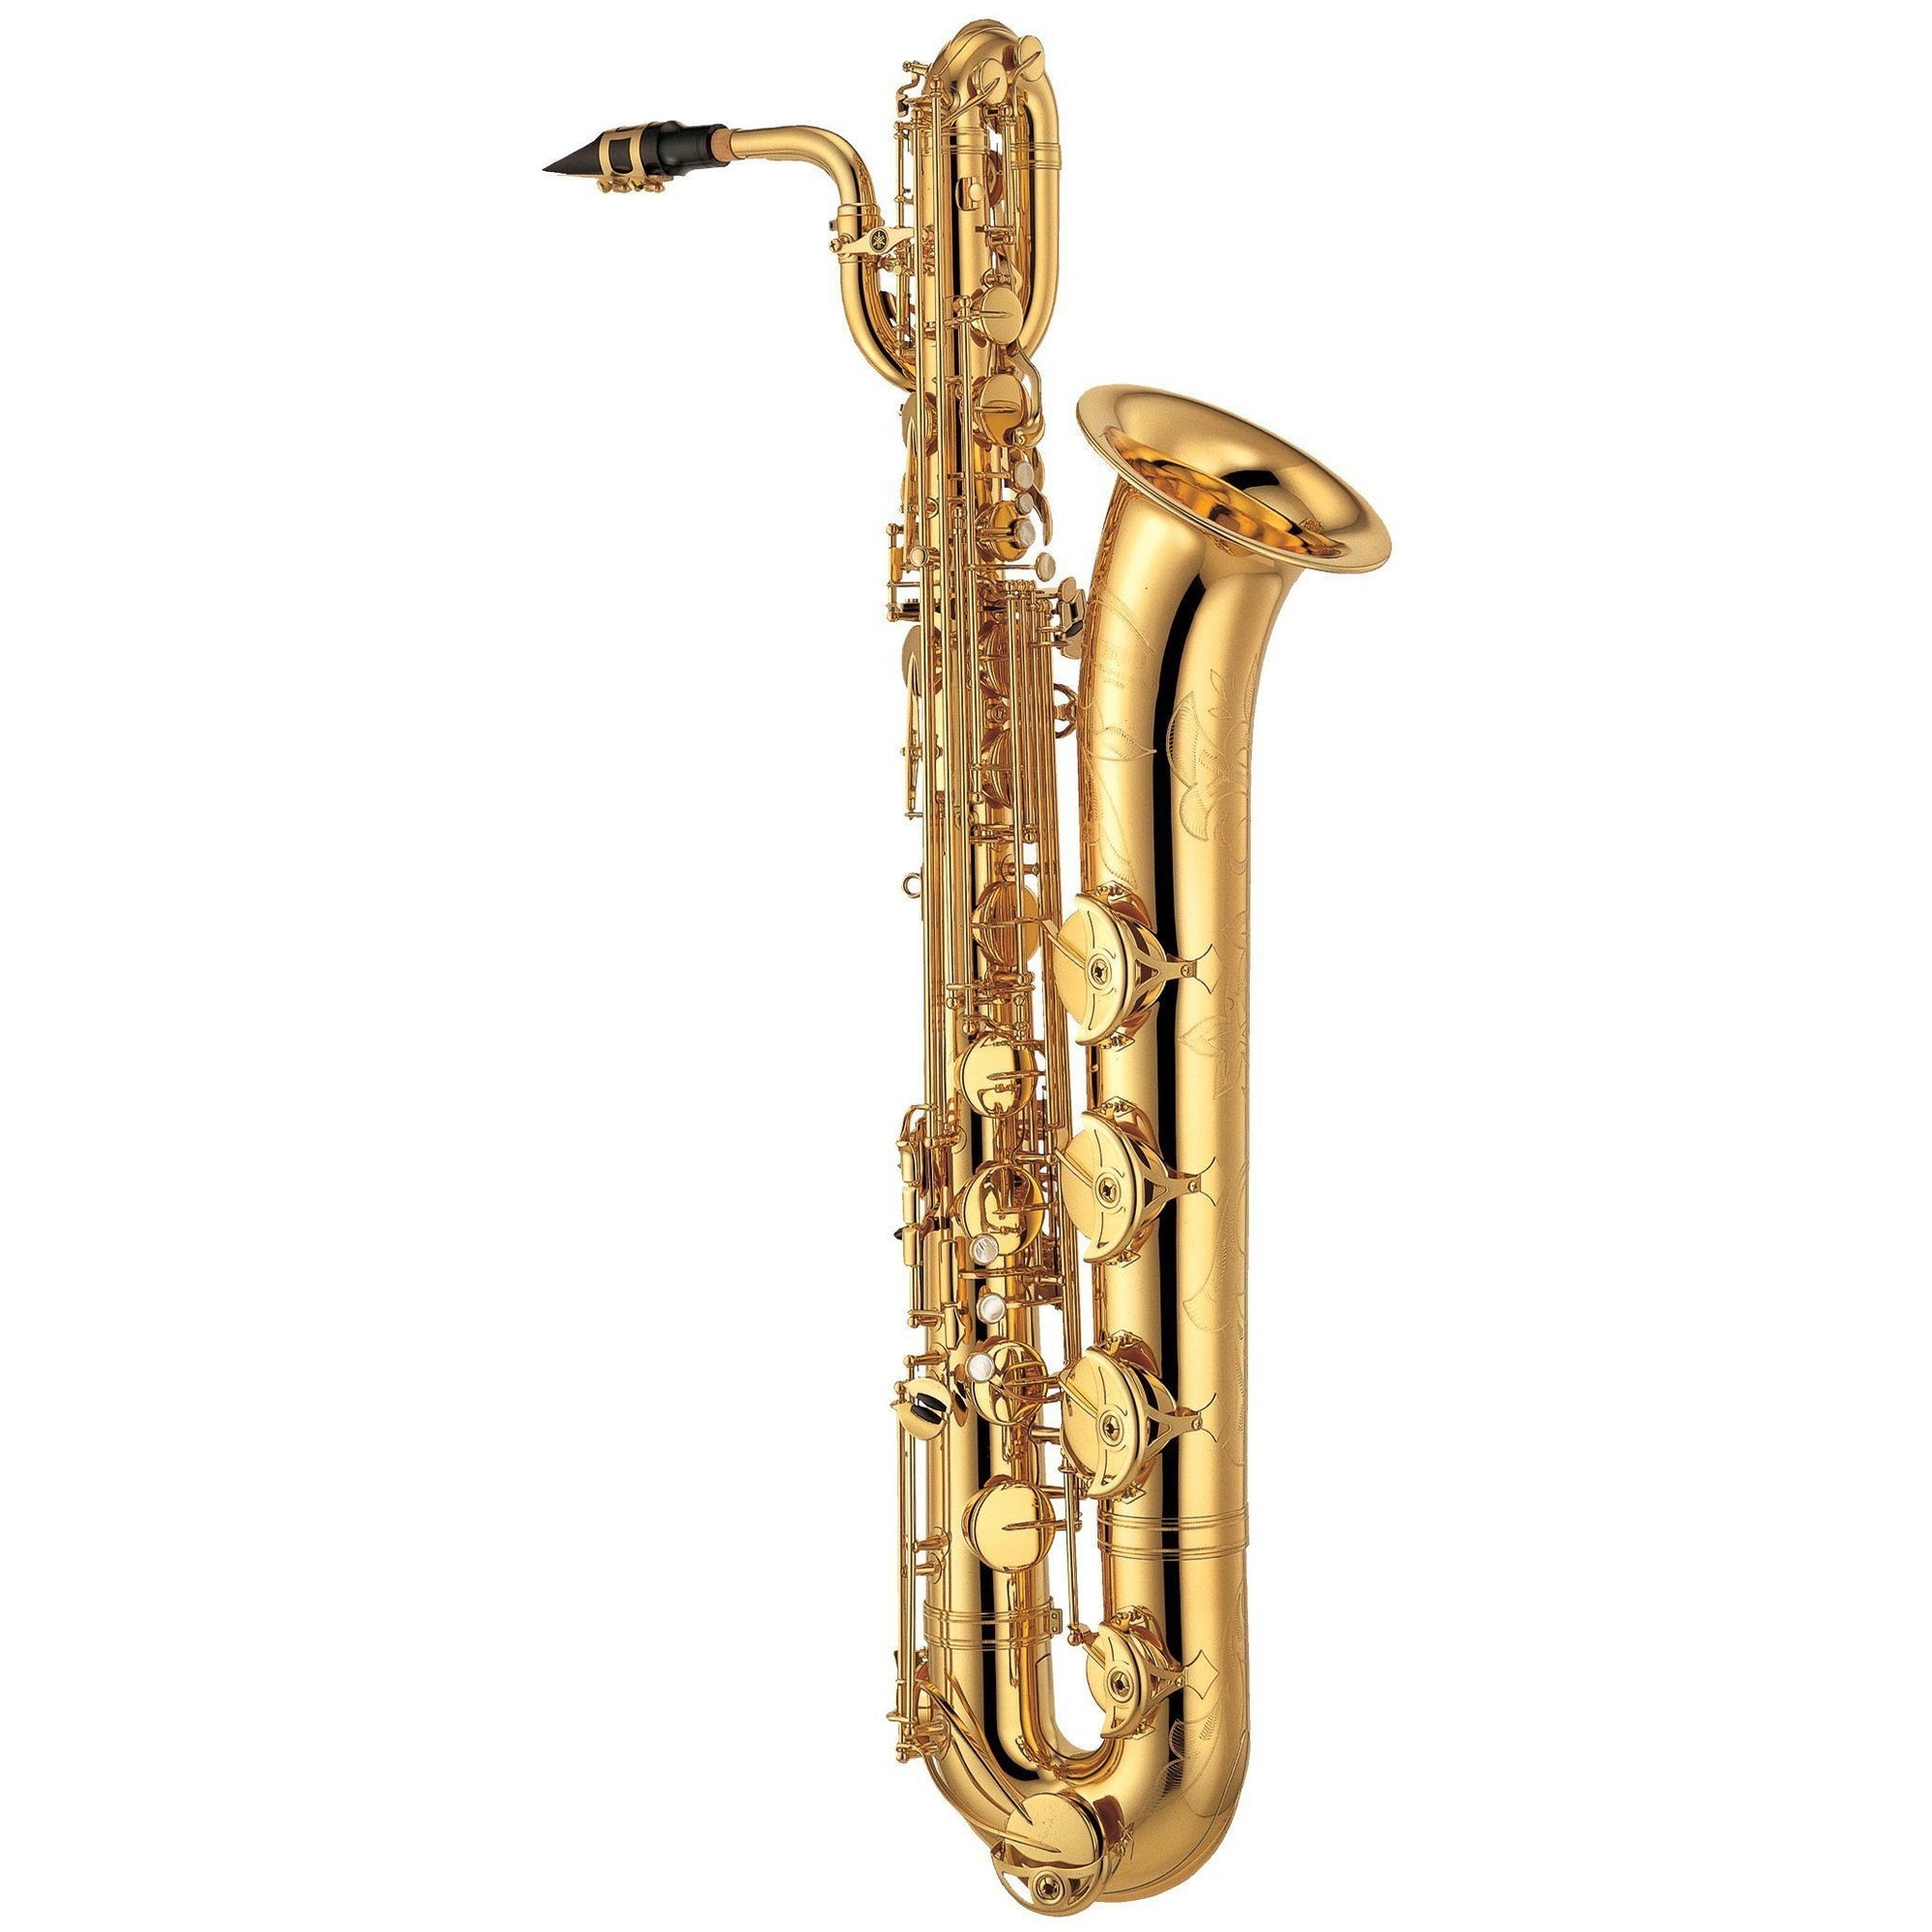 Yamaha - YBS-62 - Professional Baritone Saxophone-Saxophone-Yamaha-Music Elements